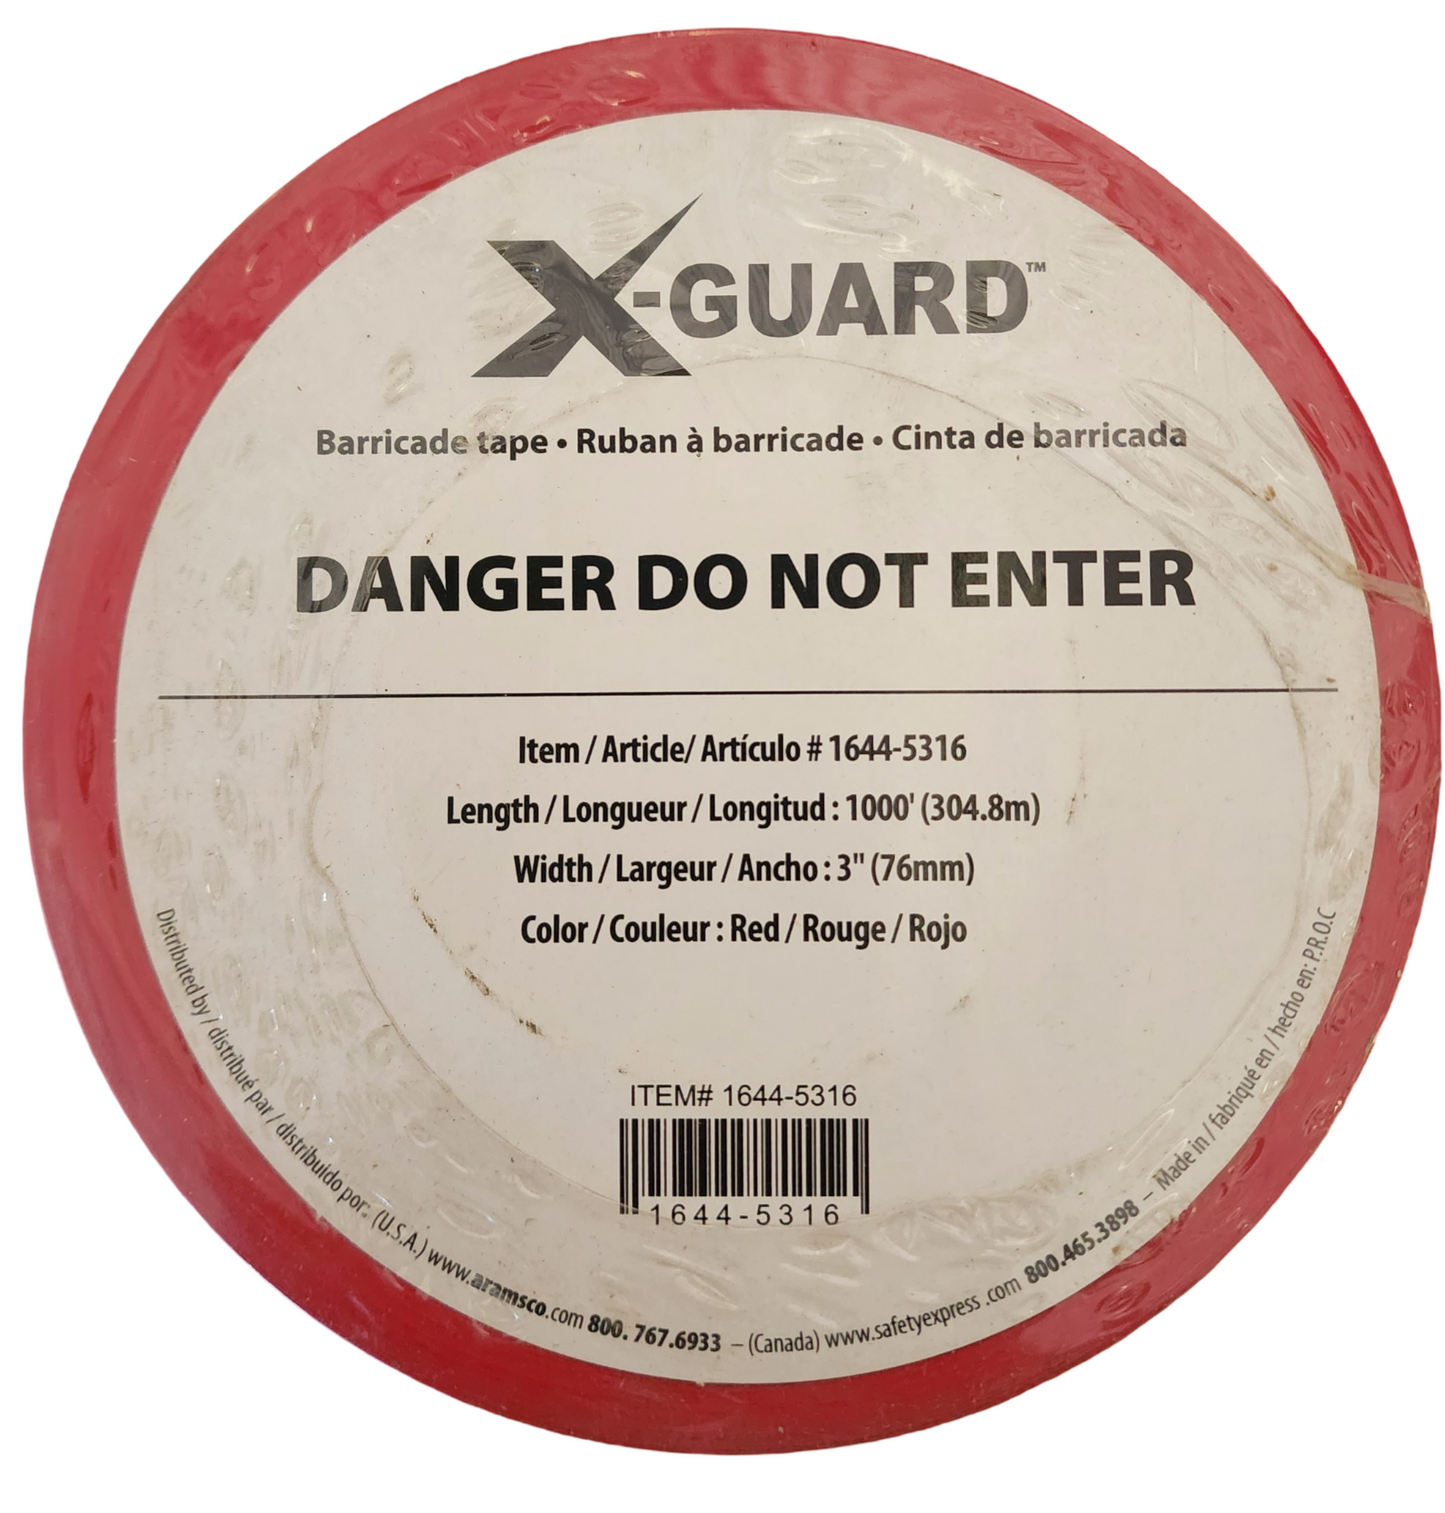 X-Guard Barricade Tape: Danger Do Not Enter - 3" x 1000', Pack of 3 Rolls